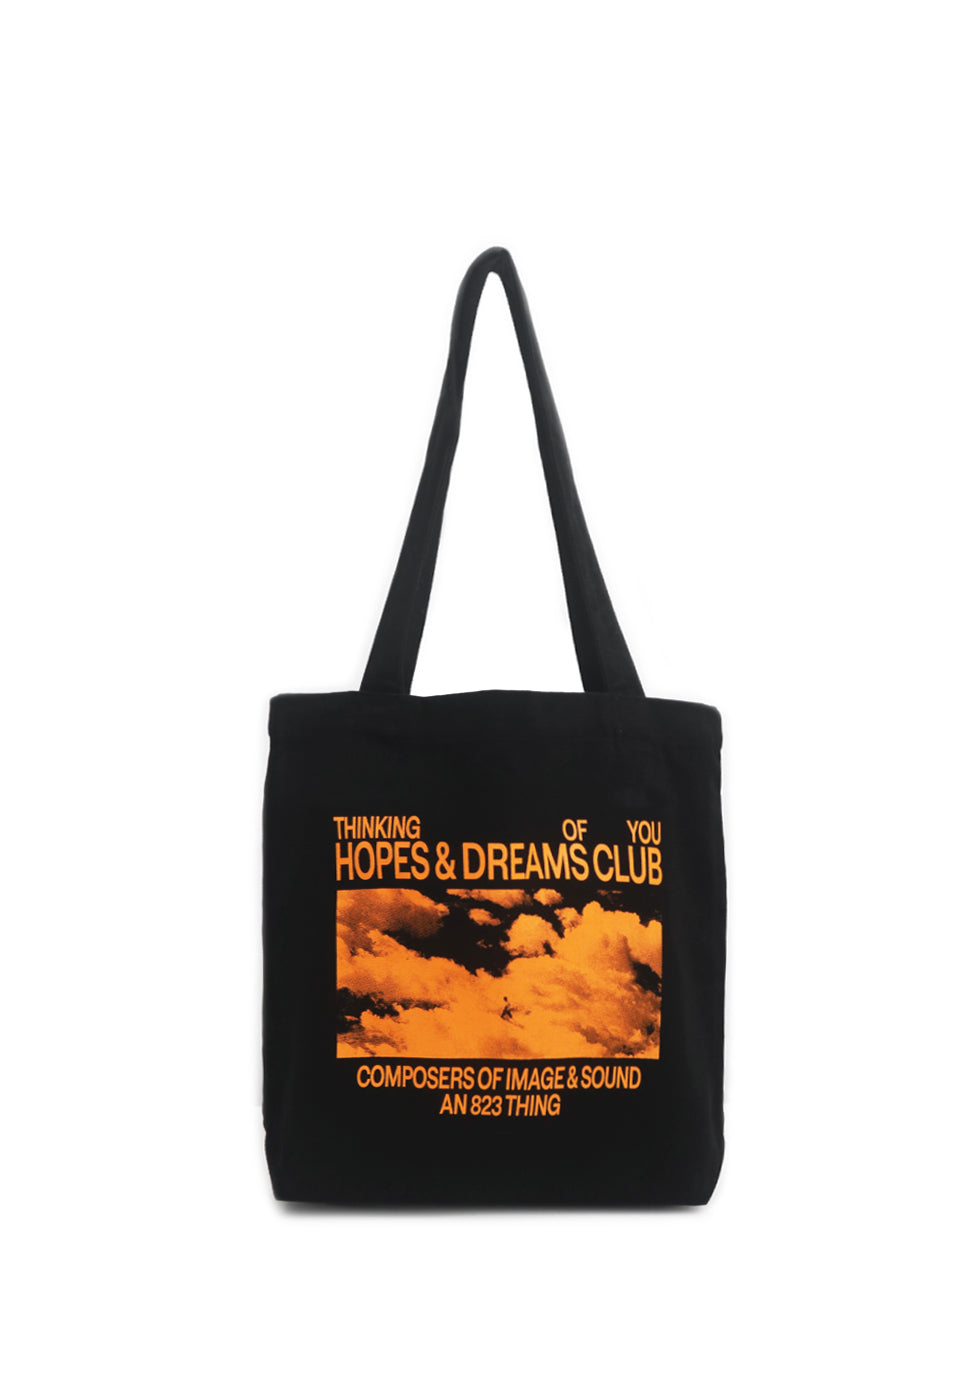 HOPES AND DREAMS CLUB TOTE BAG